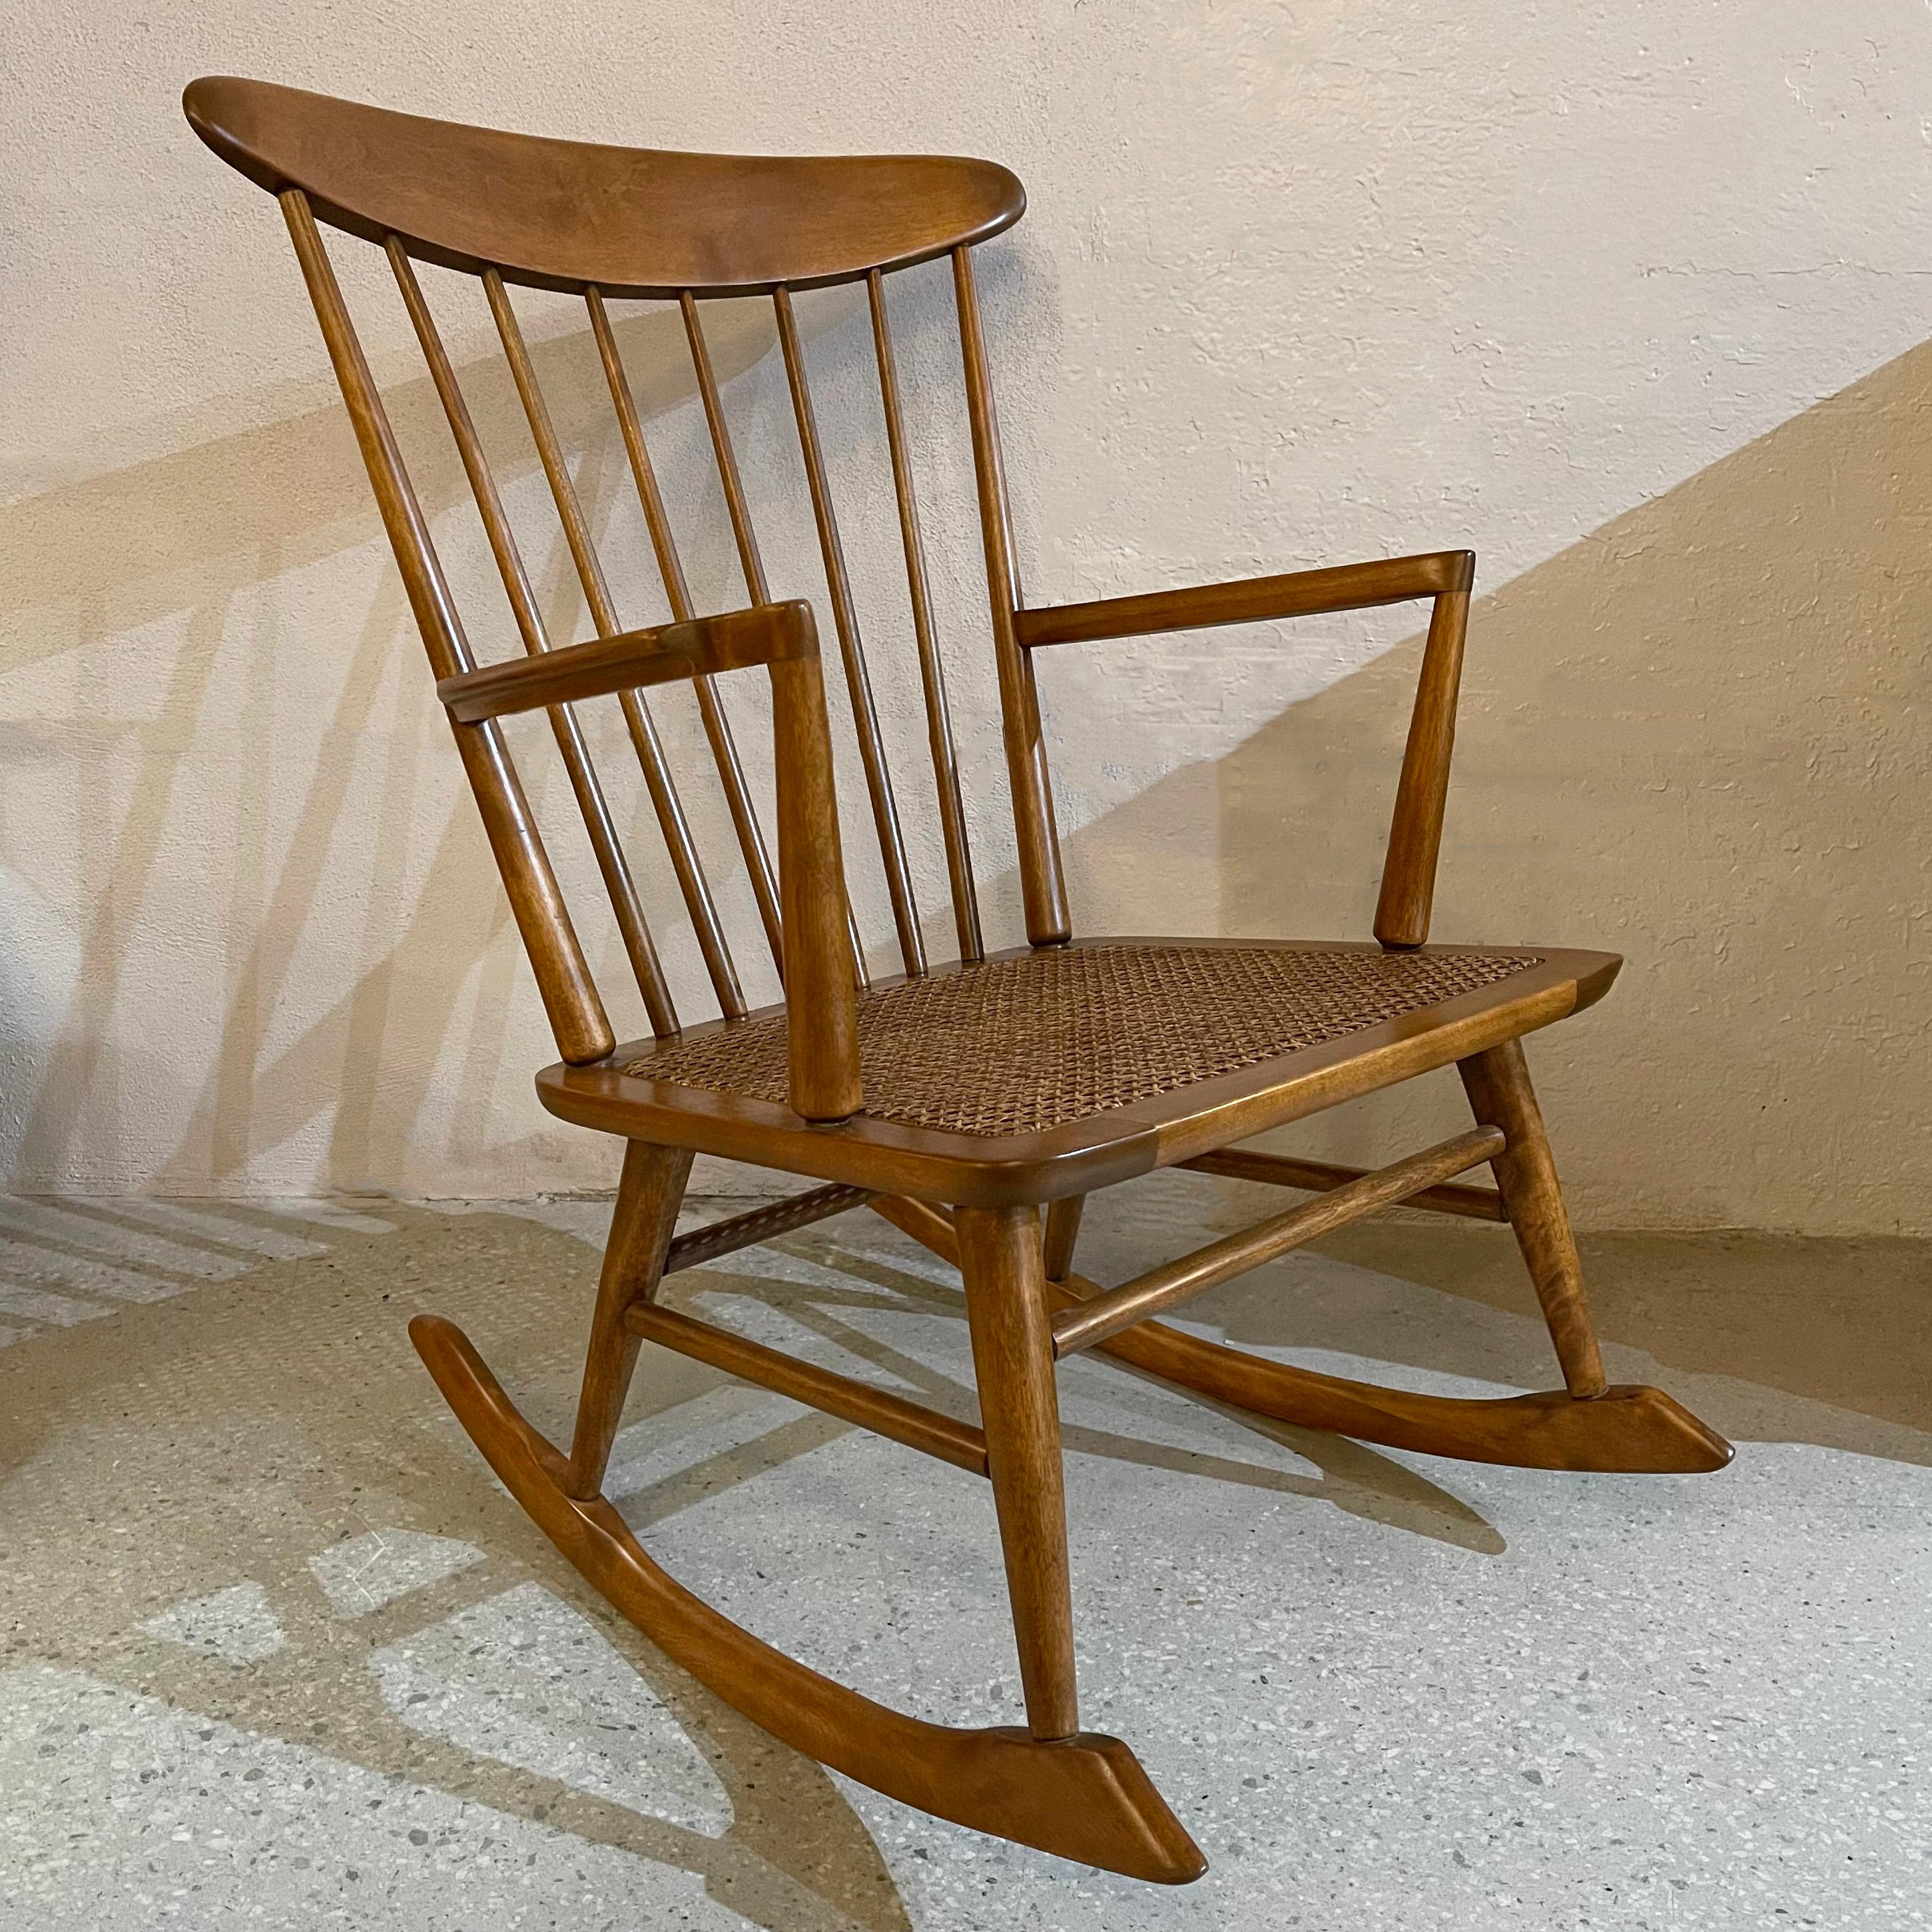 Moderner Schaukelstuhl aus Buchenholz aus der Mitte des Jahrhunderts mit hoher Spindelrückenlehne und neu gepolstertem Sitz. Der Stuhl ist amerikanisch, hat aber mit seinem geschwungenen Rahmen und den sich verjüngenden Spindeln eine skandinavische